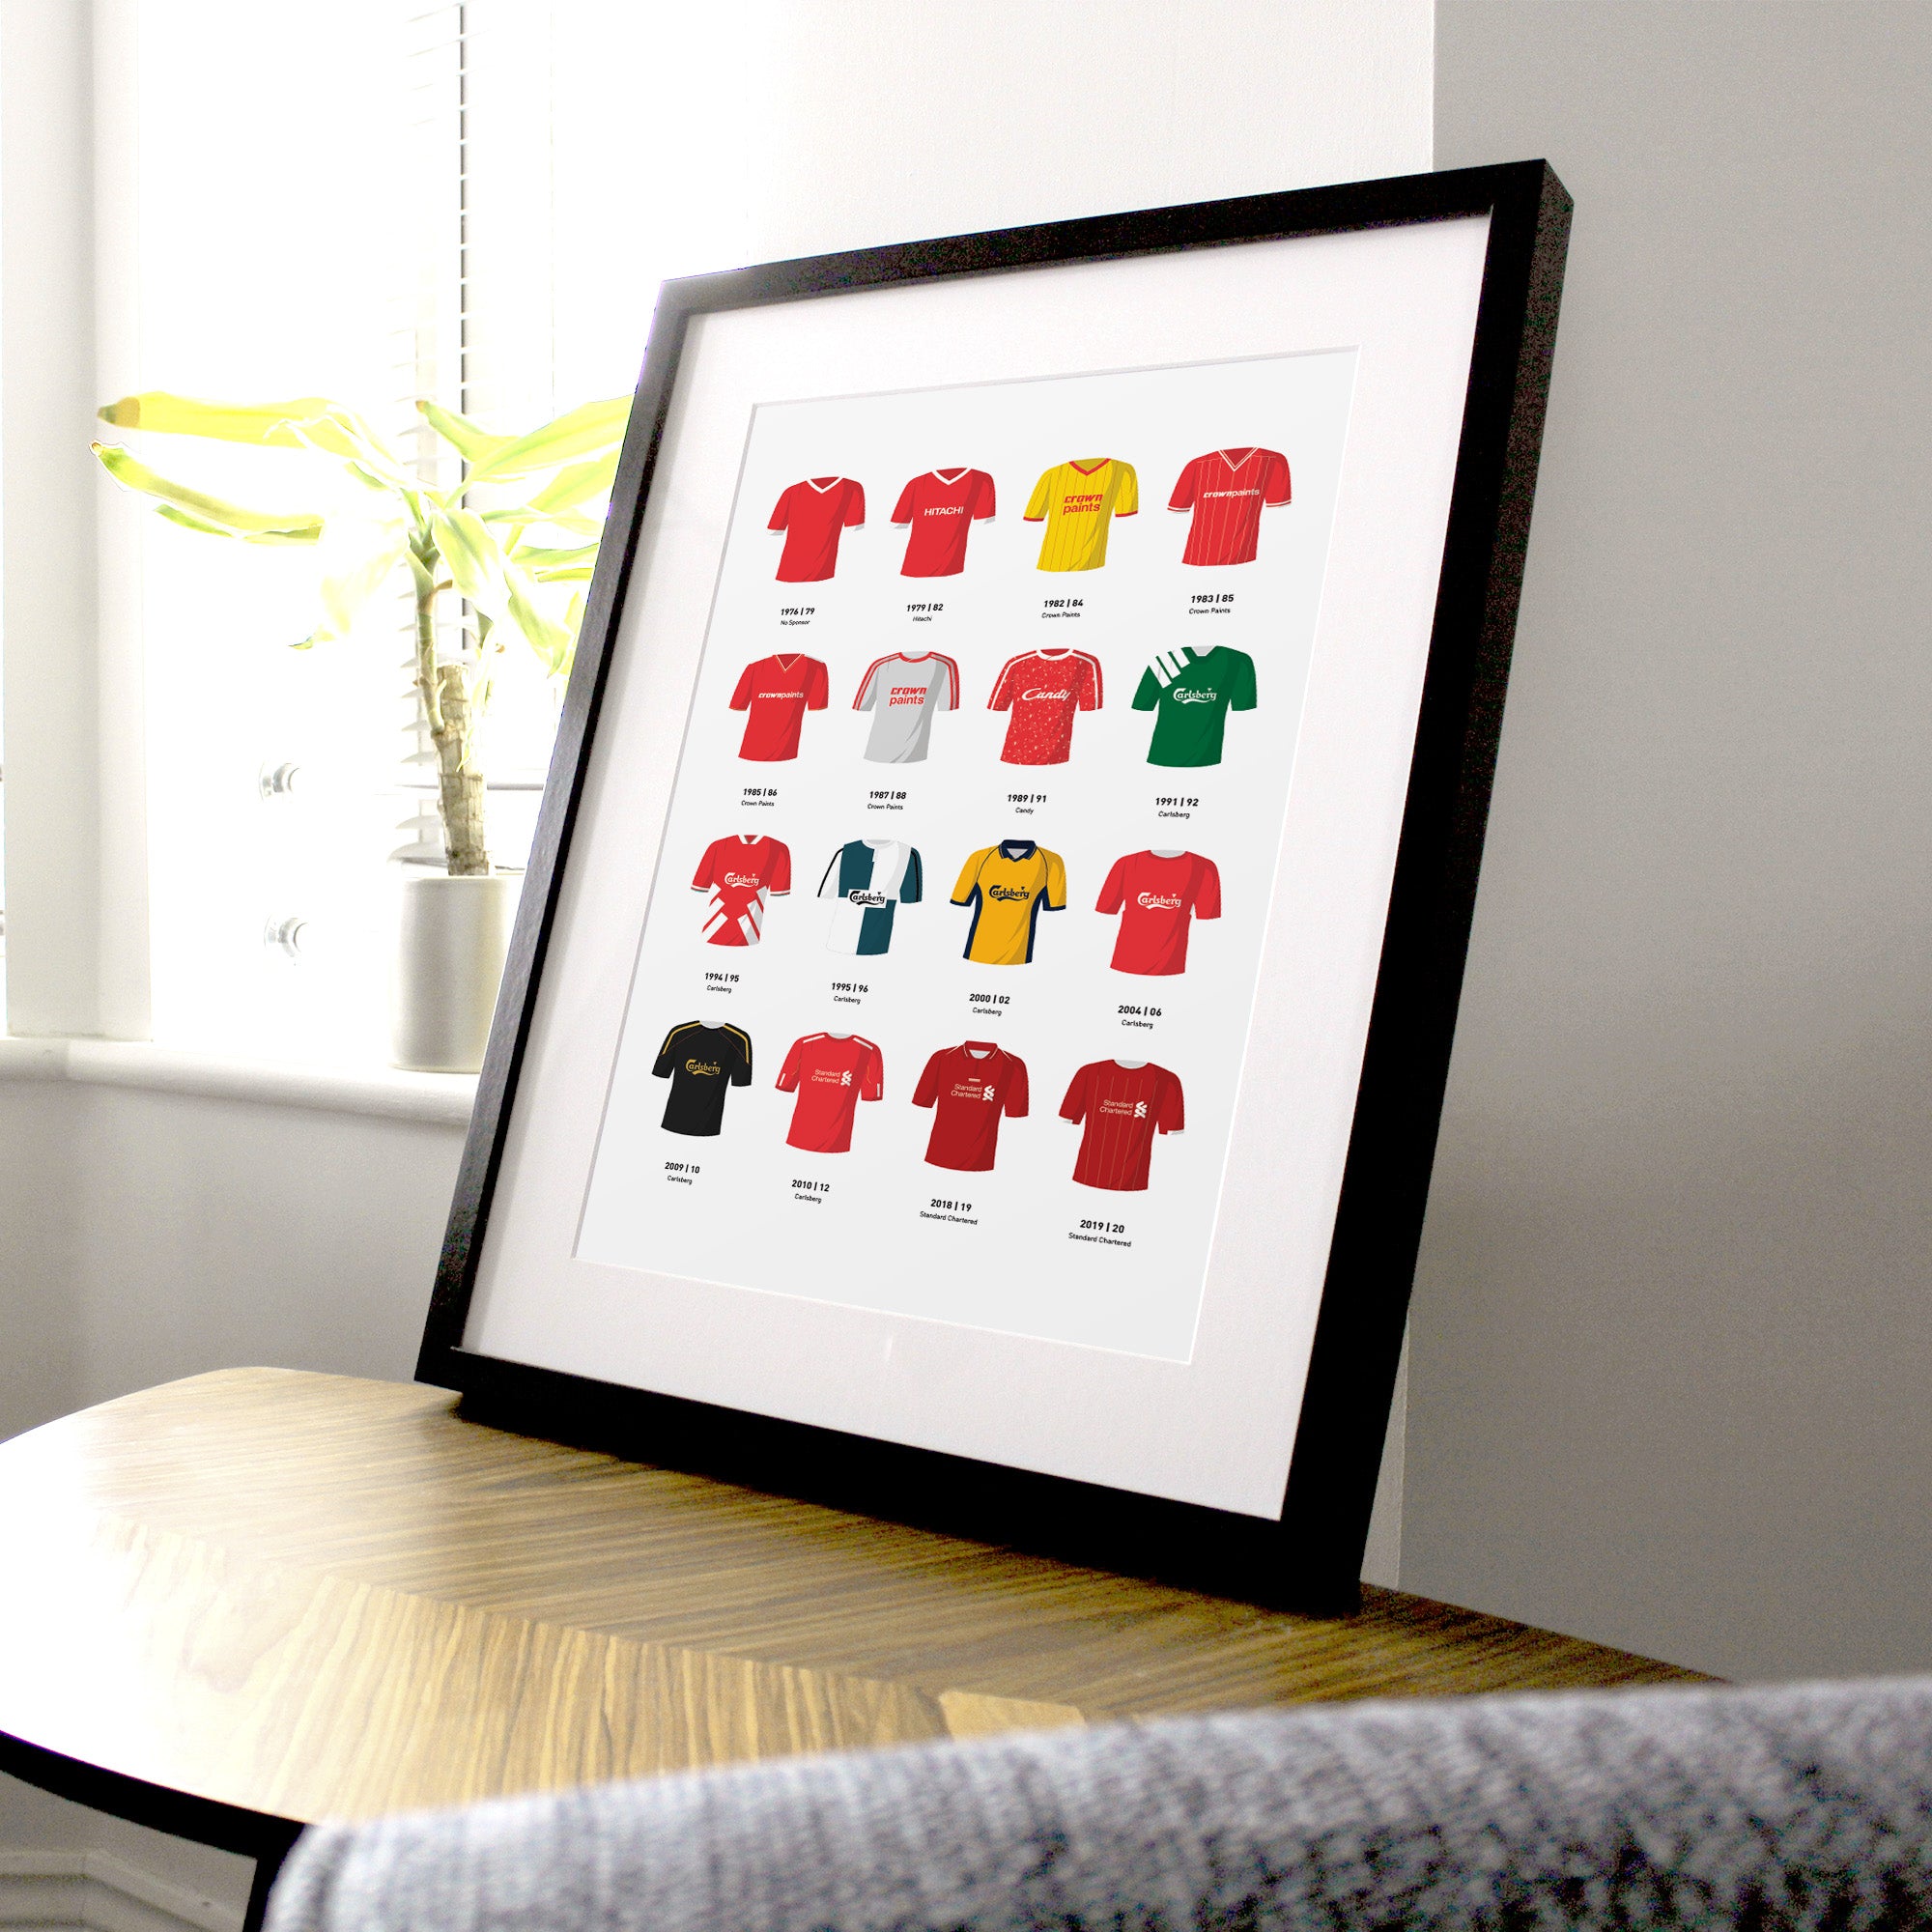 Liverpool Classic Kits Football Team Print